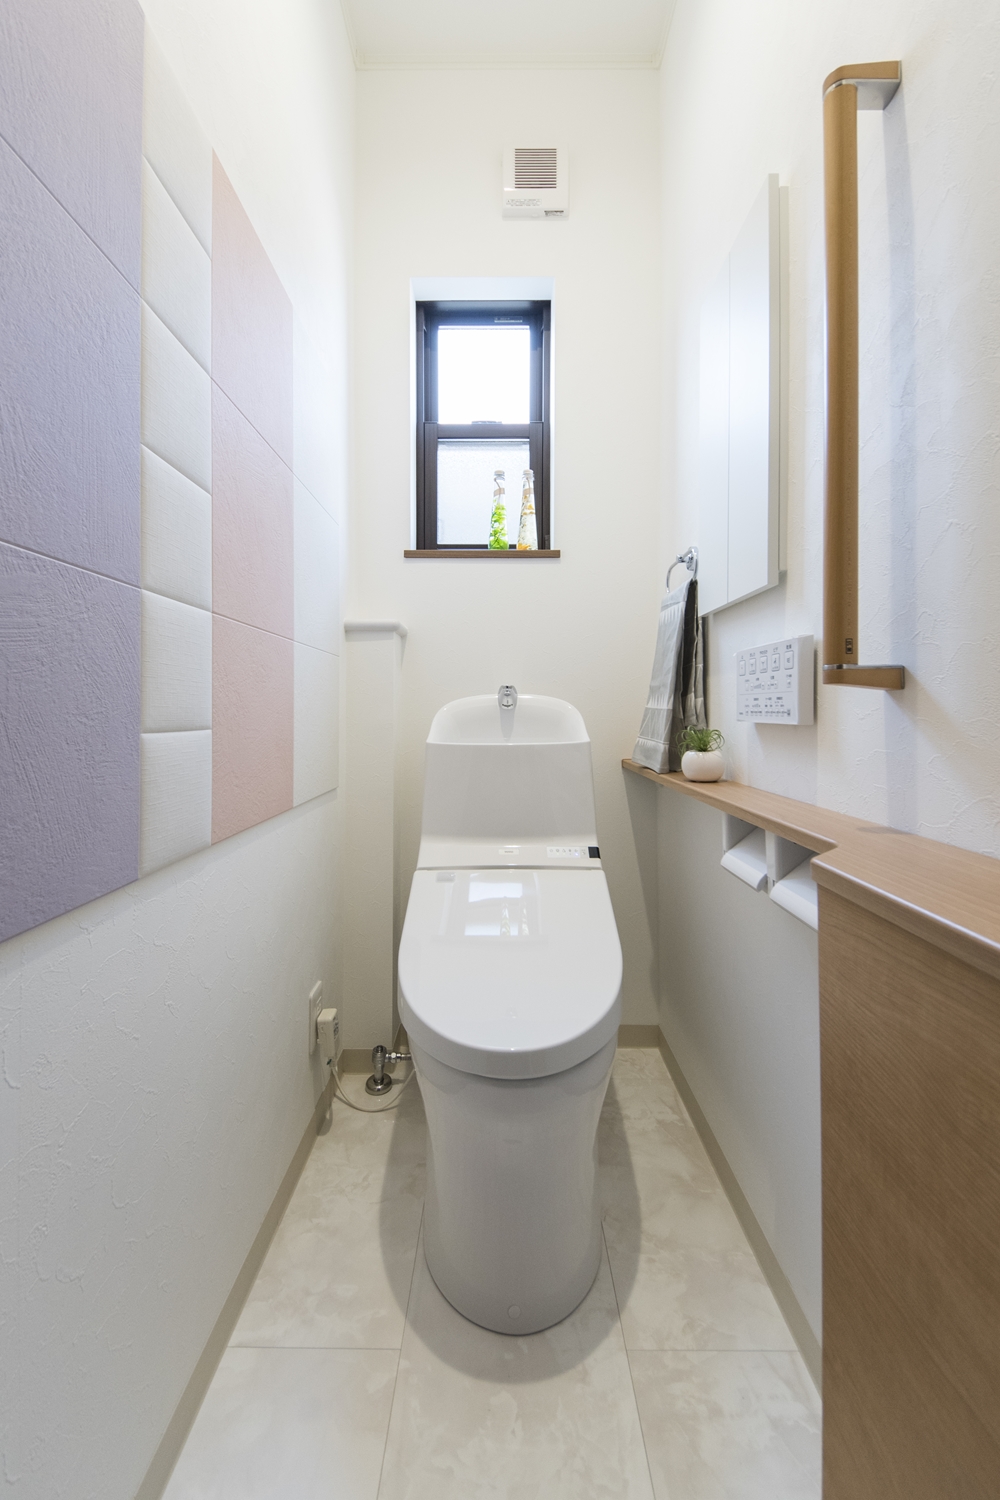 1Fトイレ(親世帯)／消臭・調湿効果のあるエコカラットタイルを施しました。パステルカラーを組み合わせた可愛らしいデザインです。